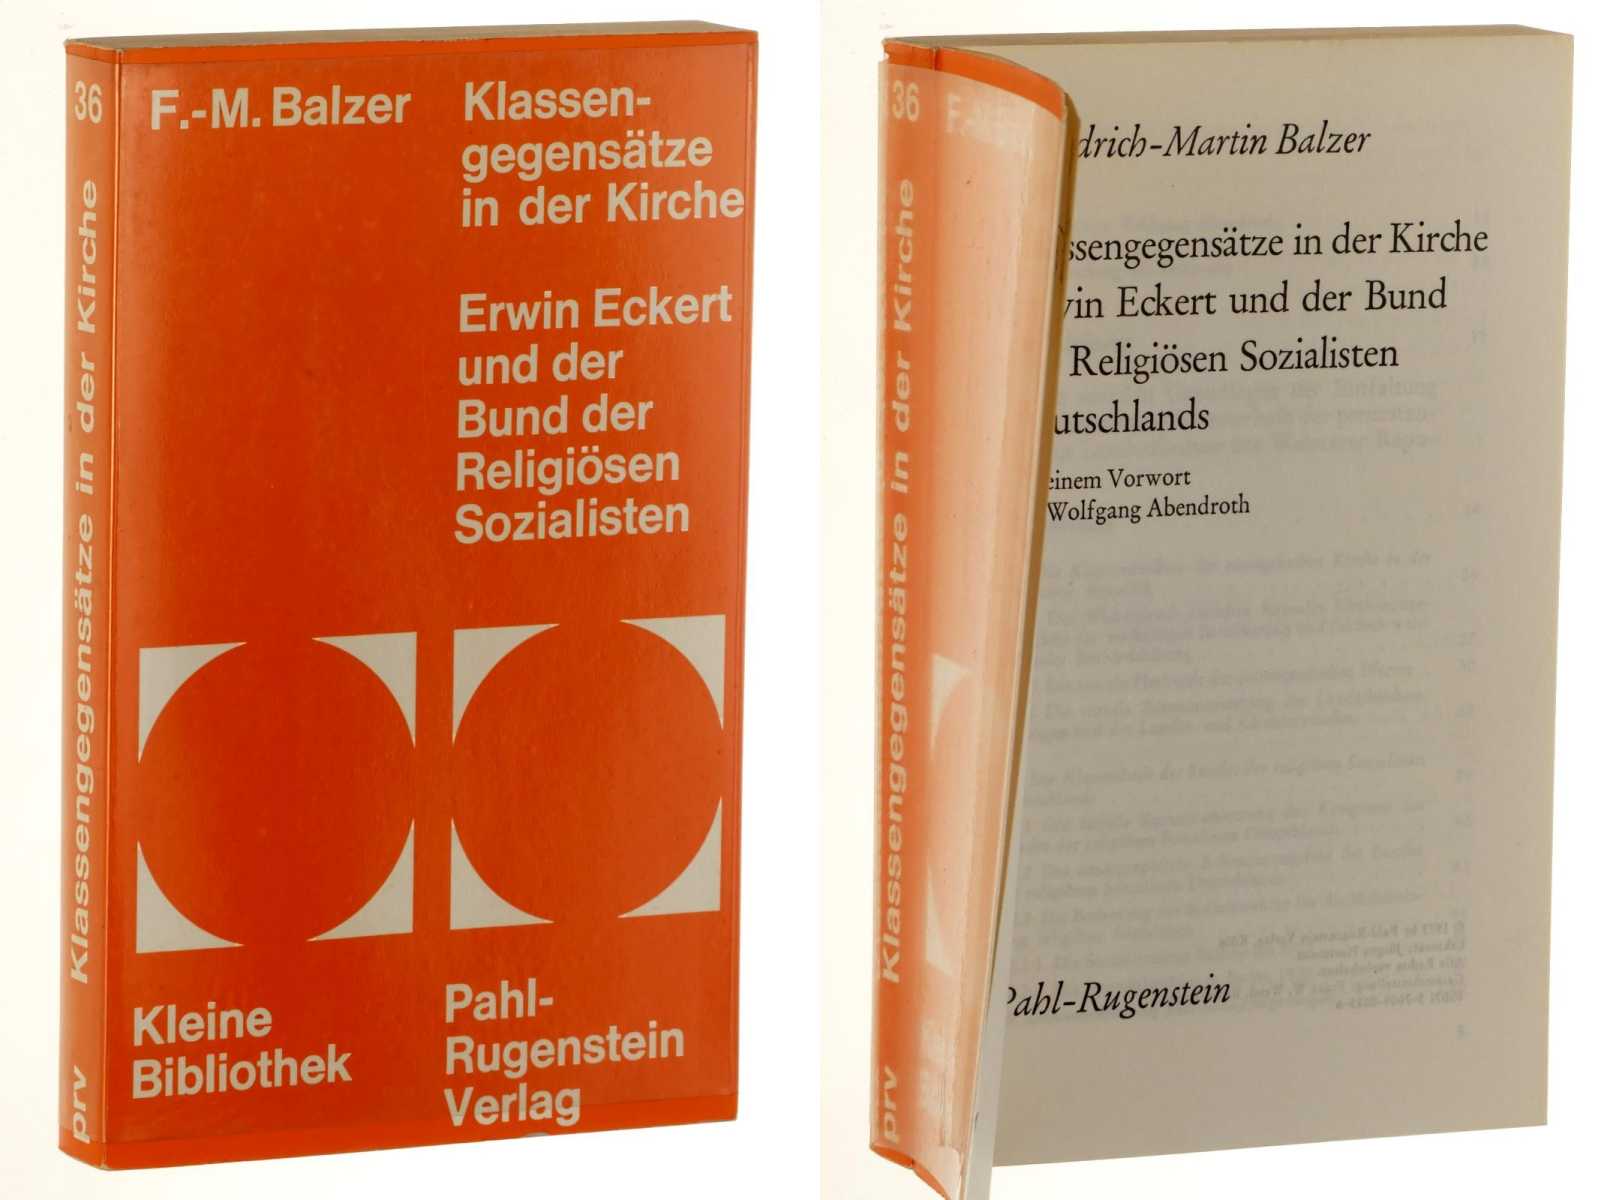 Balzer, Friedrich-Martin:  Klassengegensätze in der Kirche. Erwin Eckert und der Bund der Religiösen Sozialisten Deutschlands. 